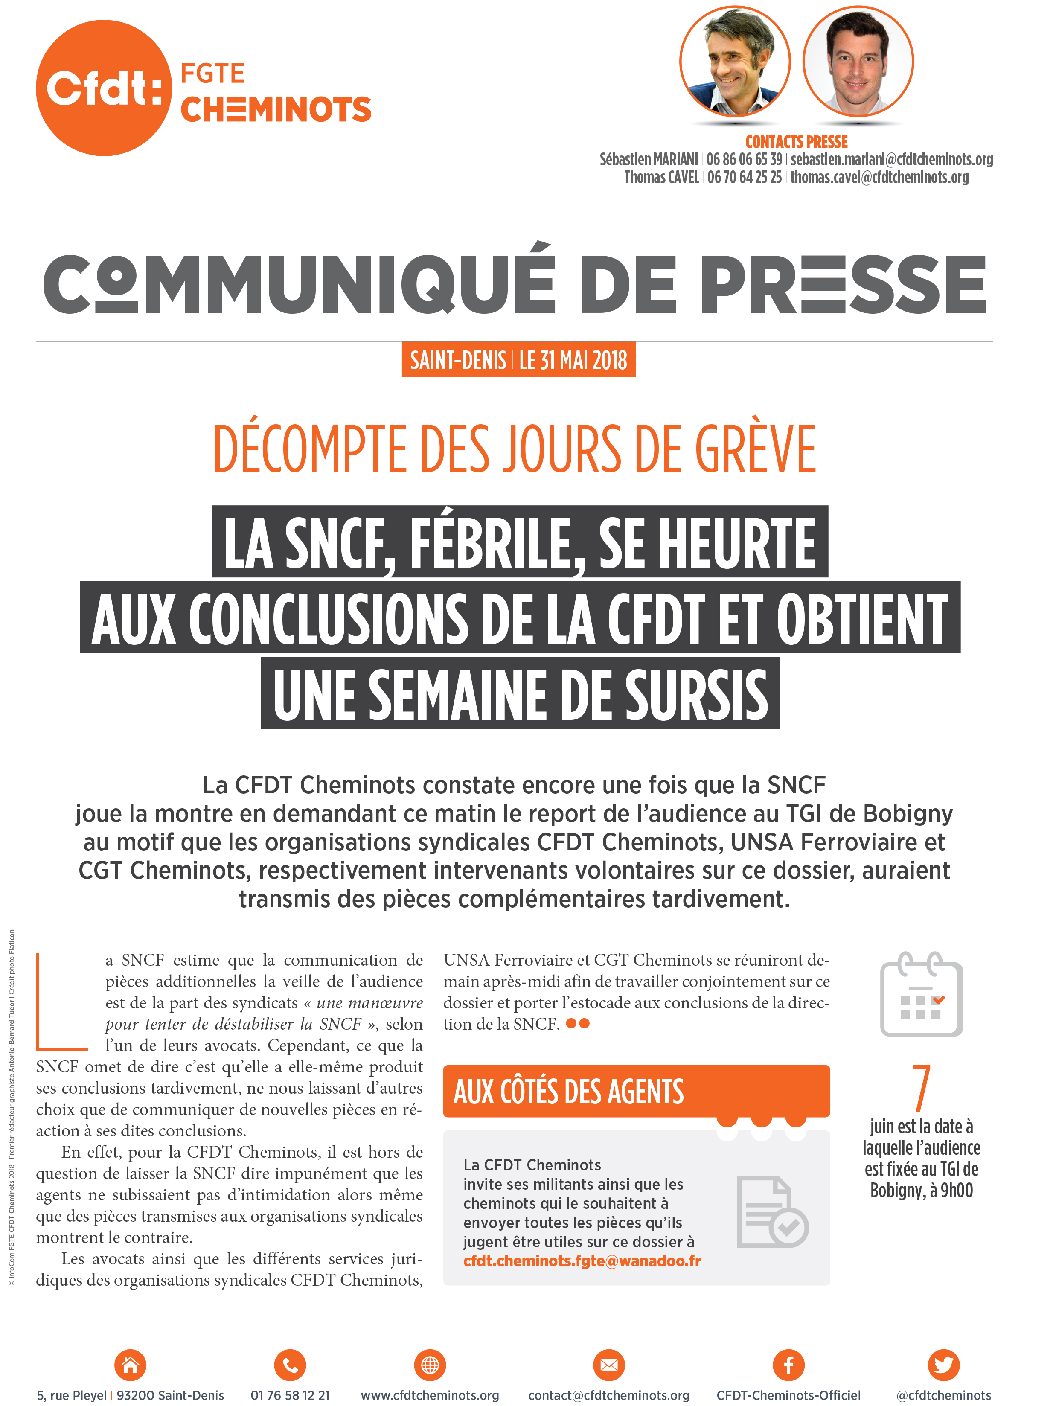 La SNCF, fébrile, se heurte aux conclusions de la CFDT et obtient une semaine de sursis